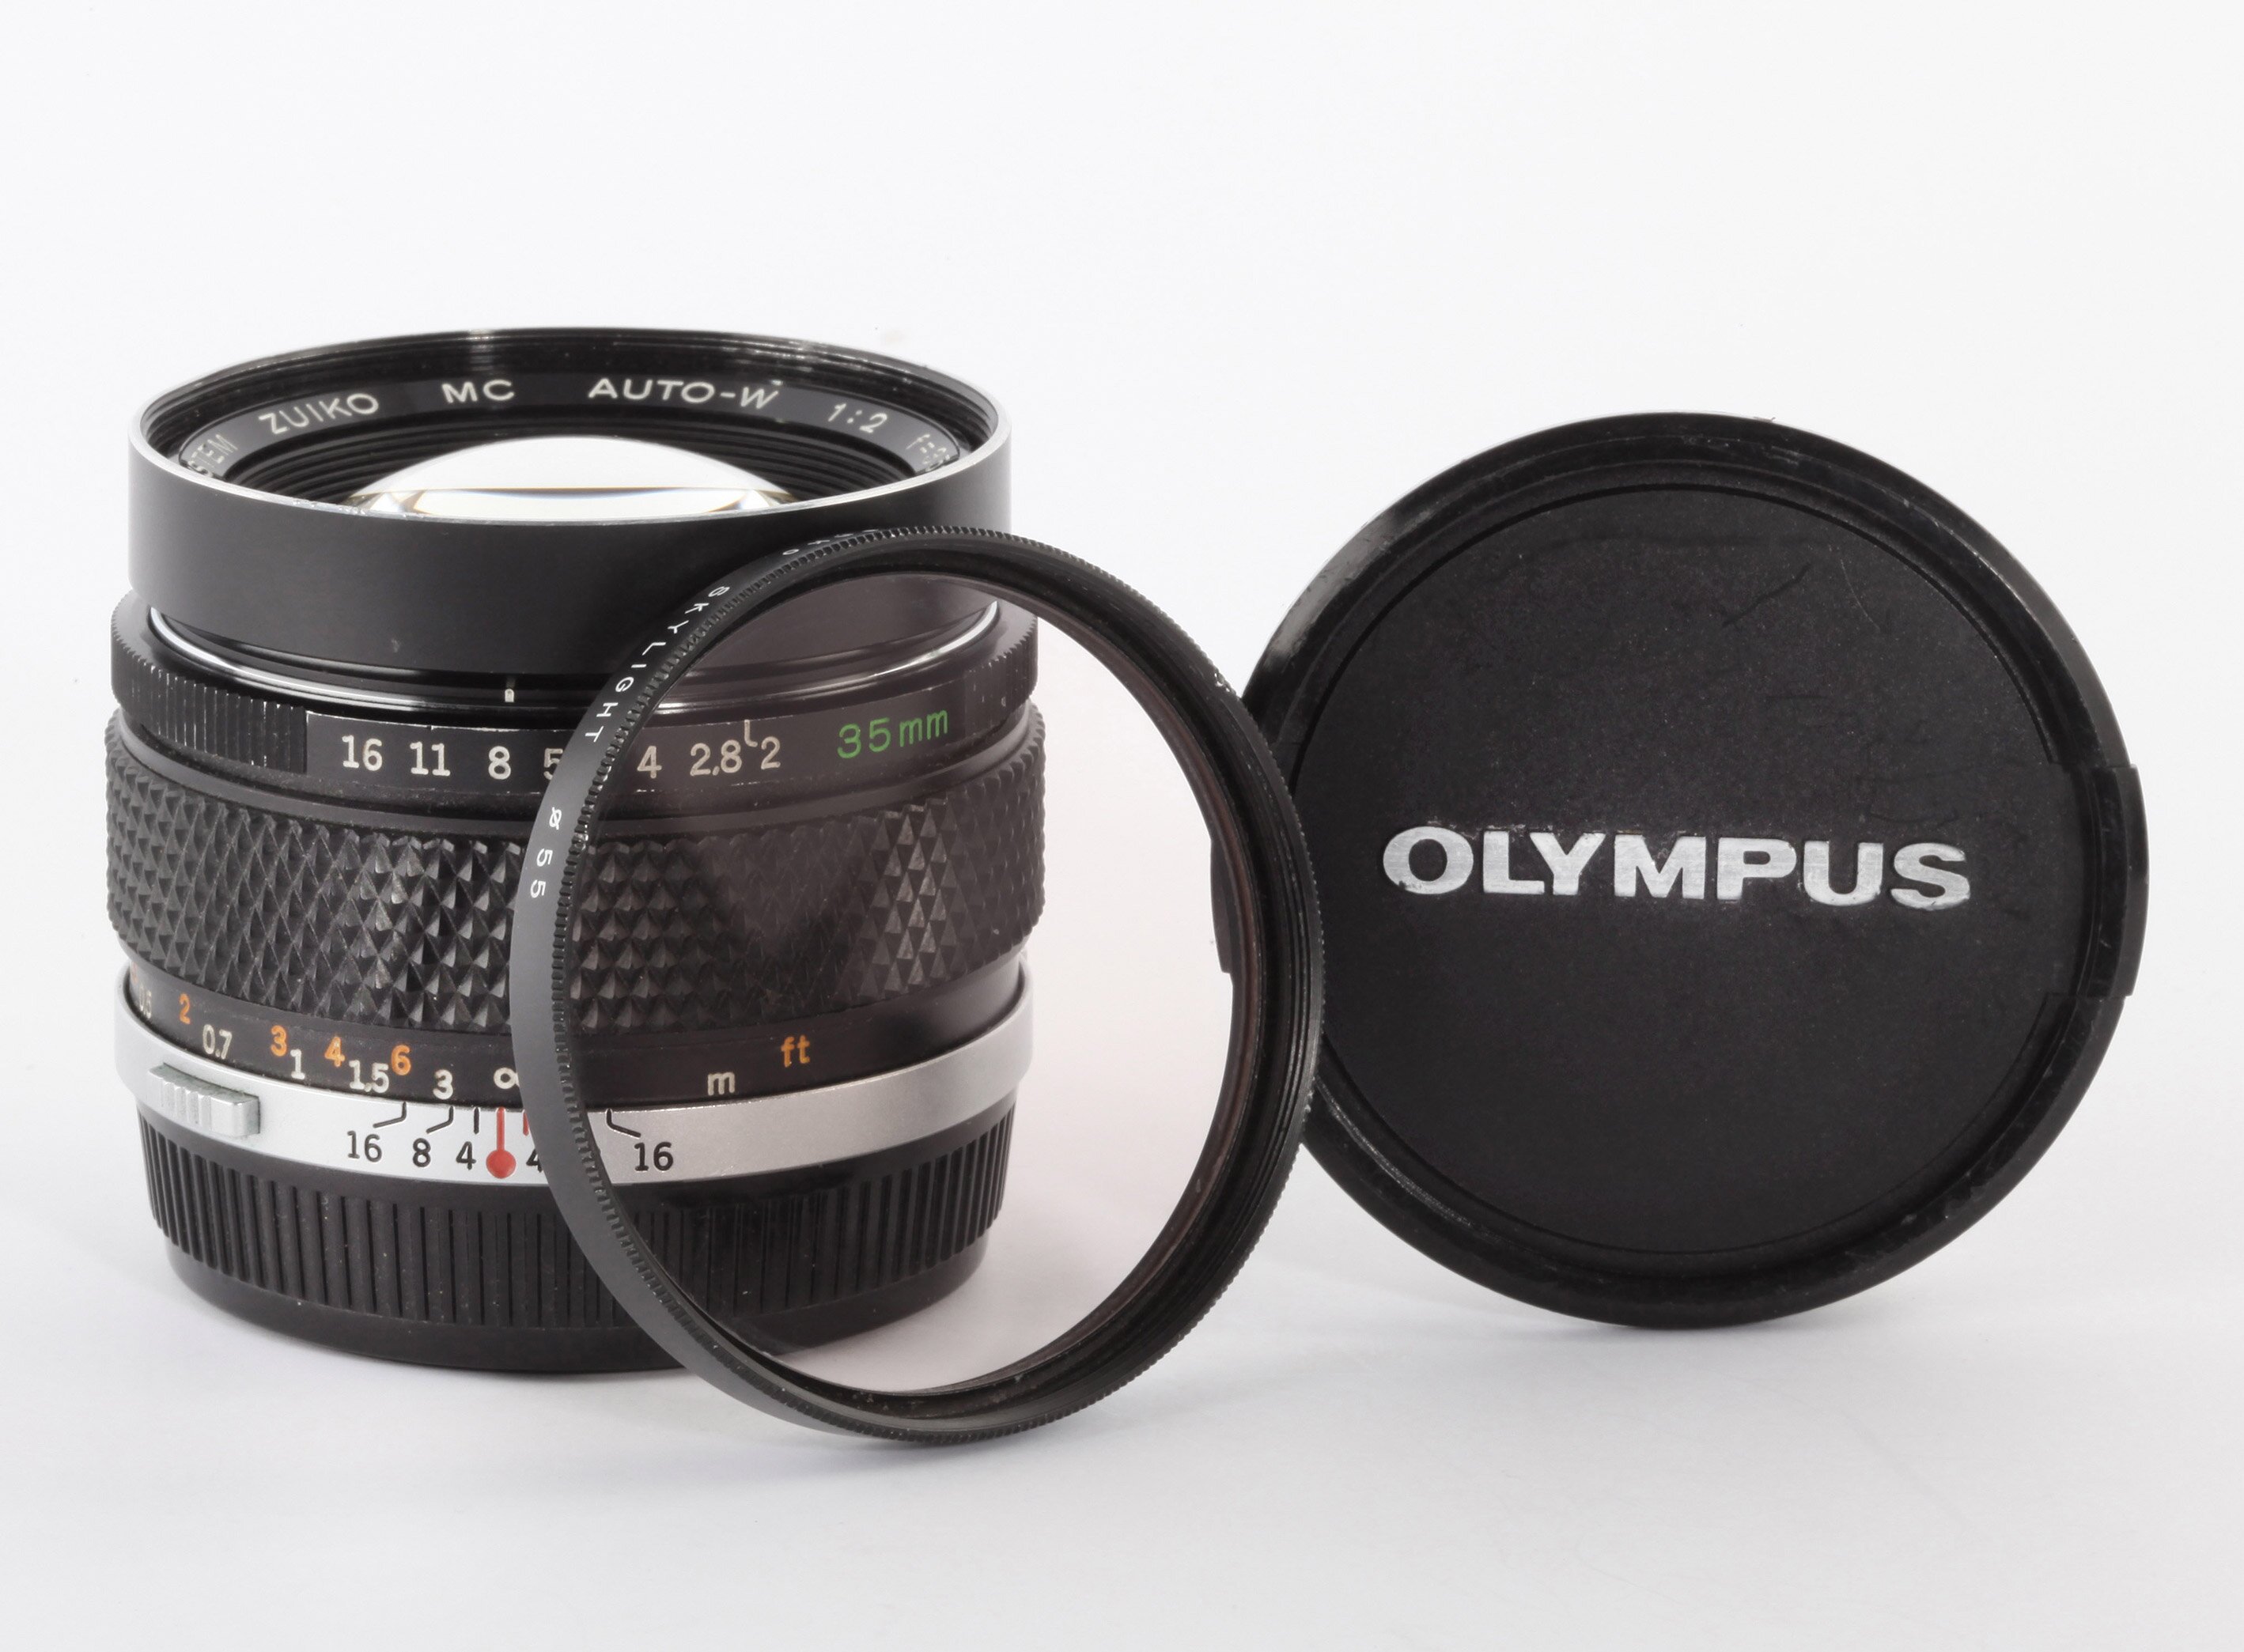 Olympus OM-System Zuiko MC Auto-W 2/35mm